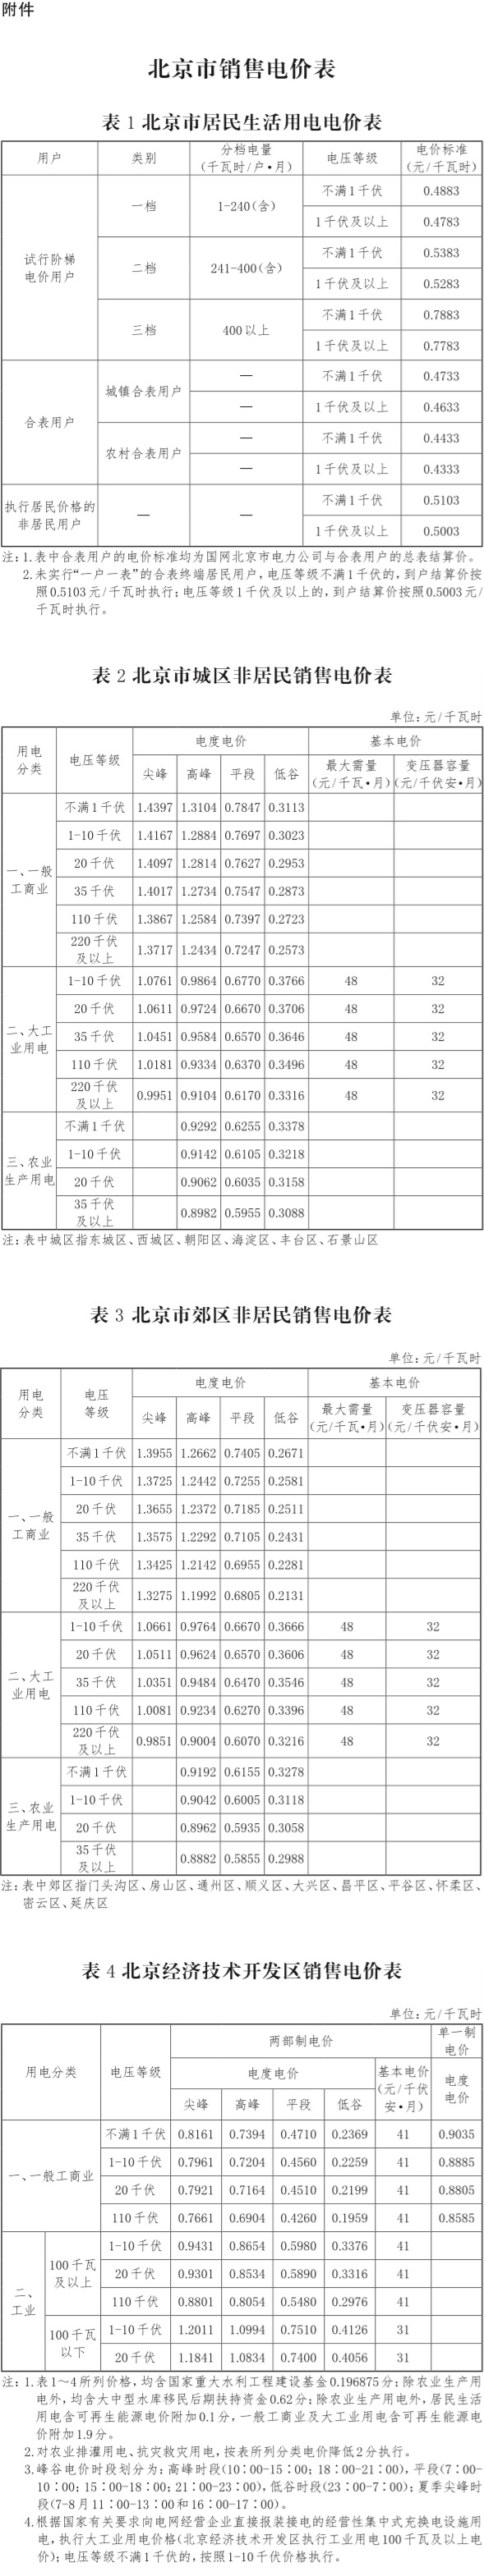 25-附件：北京市销售电价表.jpg